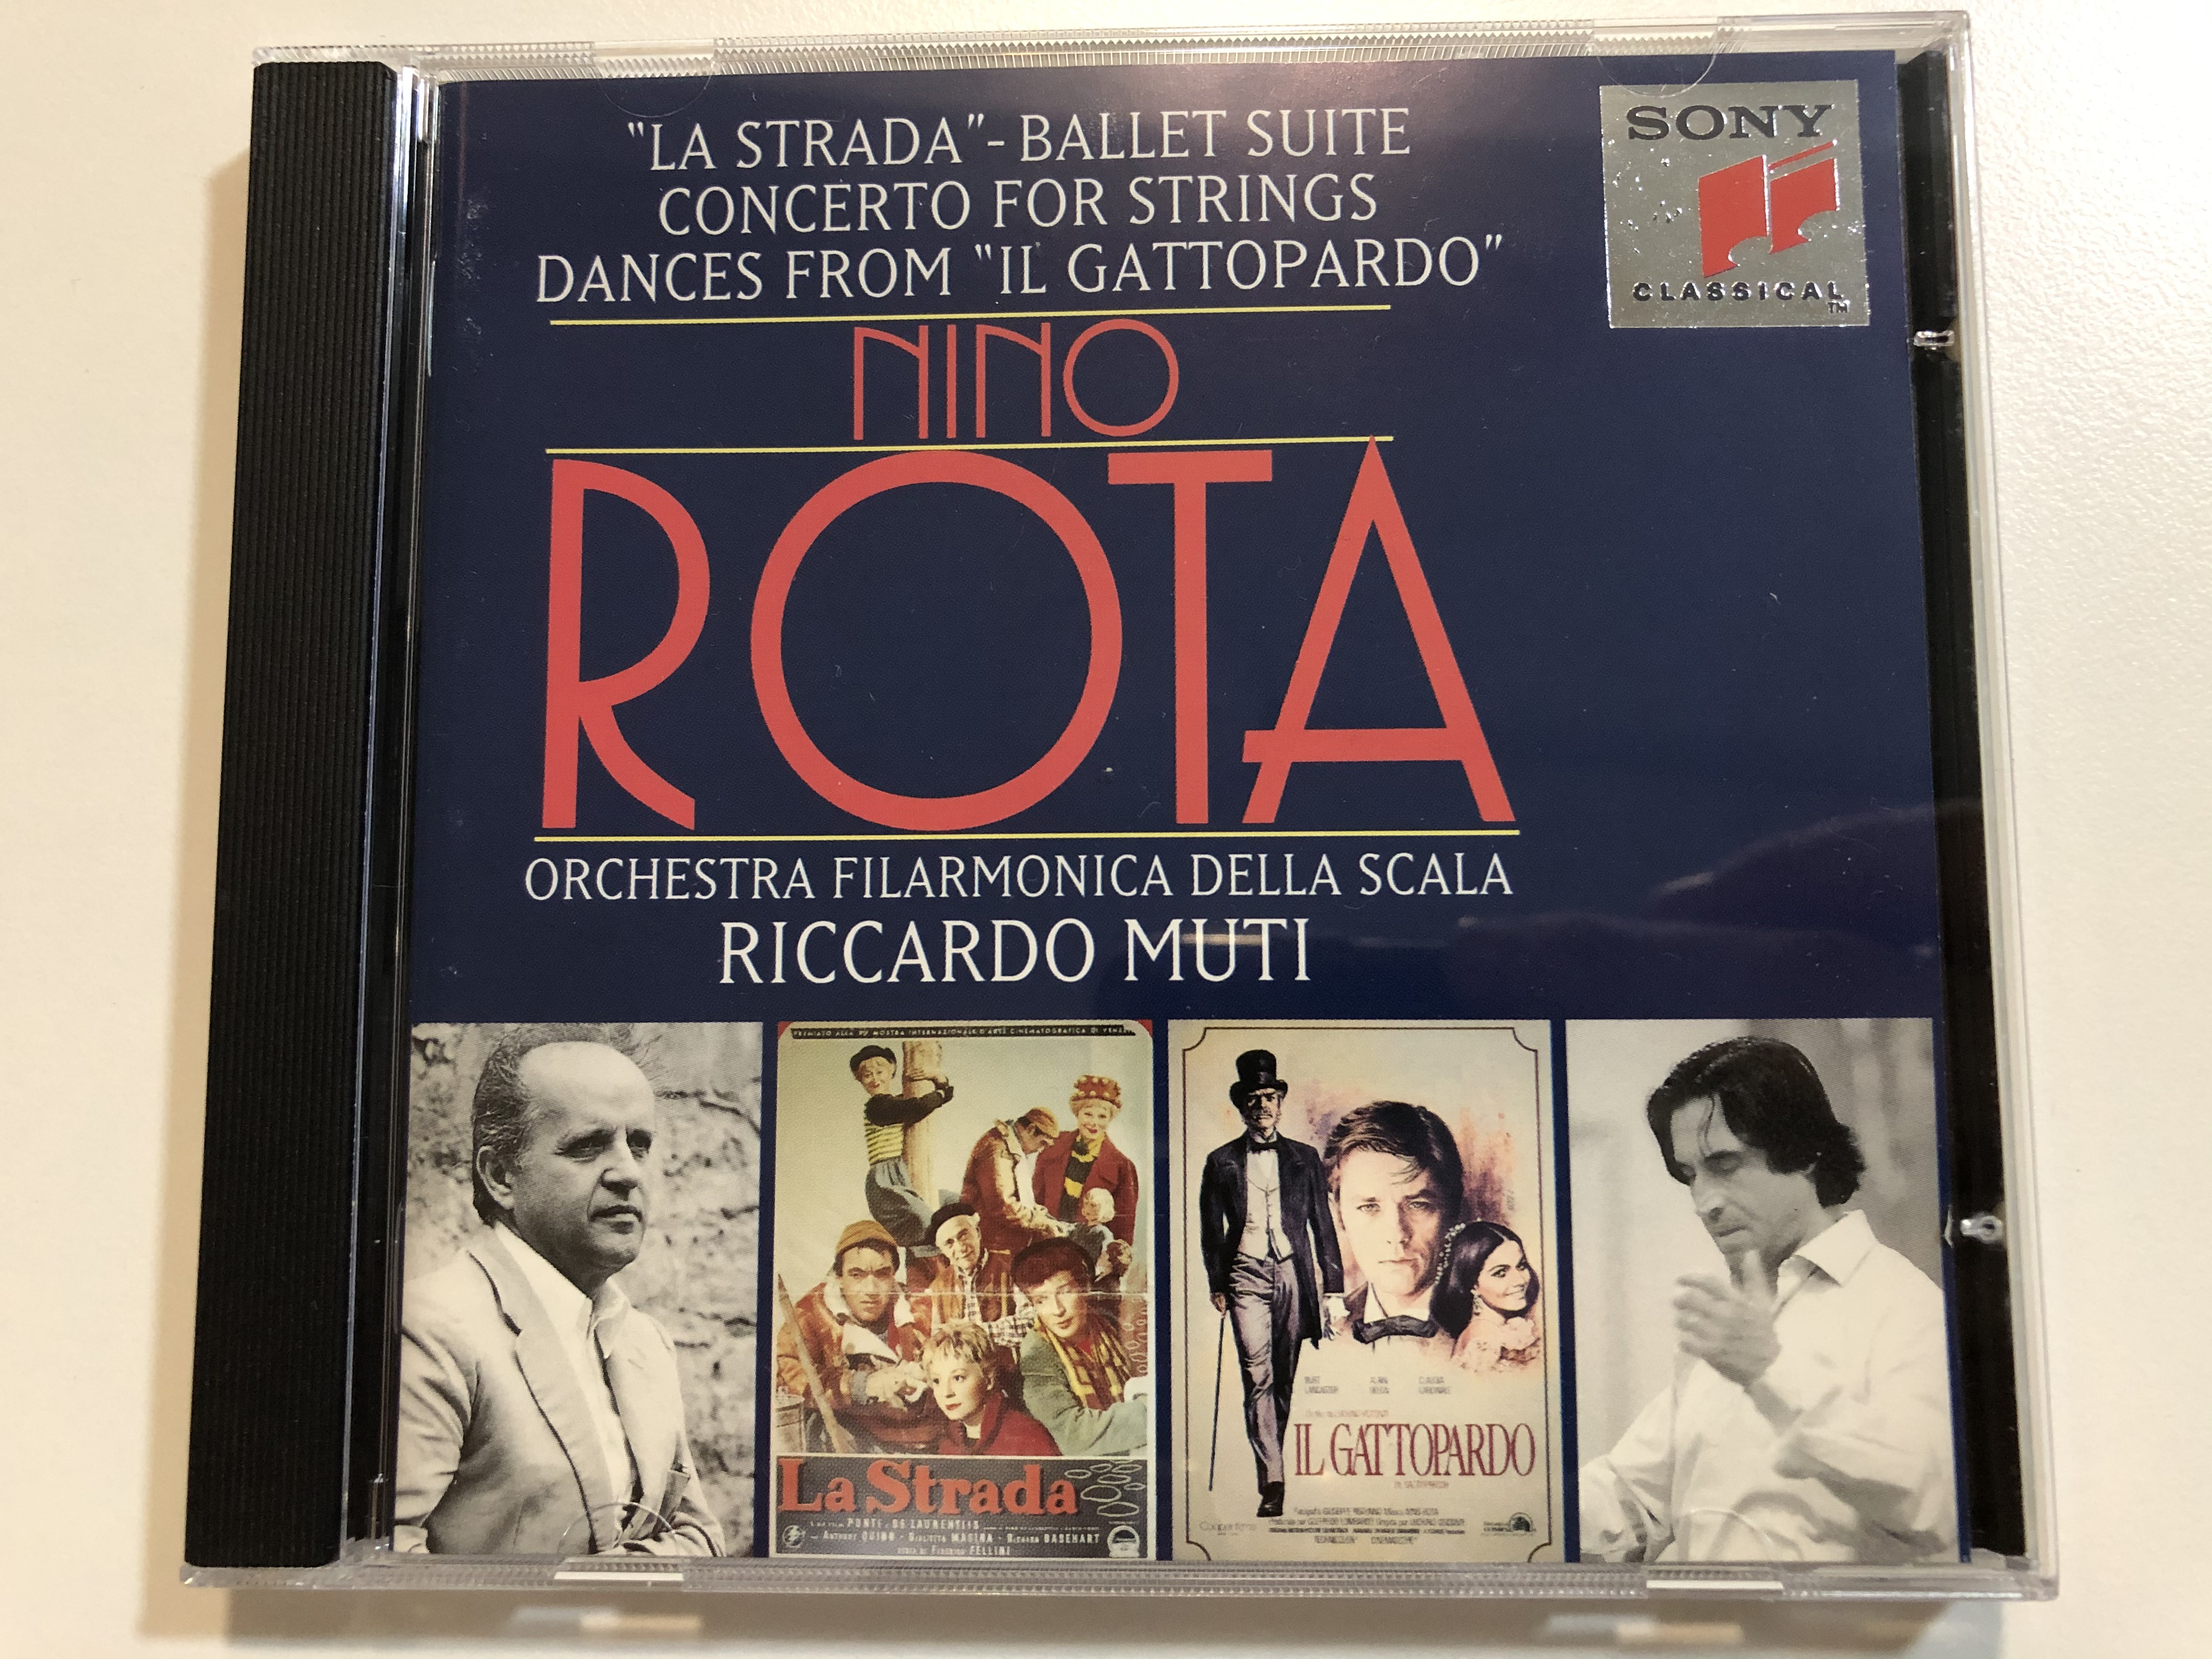 la-strada-ballet-suite-concerto-for-strings-dances-from-il-gattopardo-nino-rota-orchestra-filarmonica-della-scala-riccardo-muti-sony-classical-audio-cd-1995-sk-66-279-1-.jpg